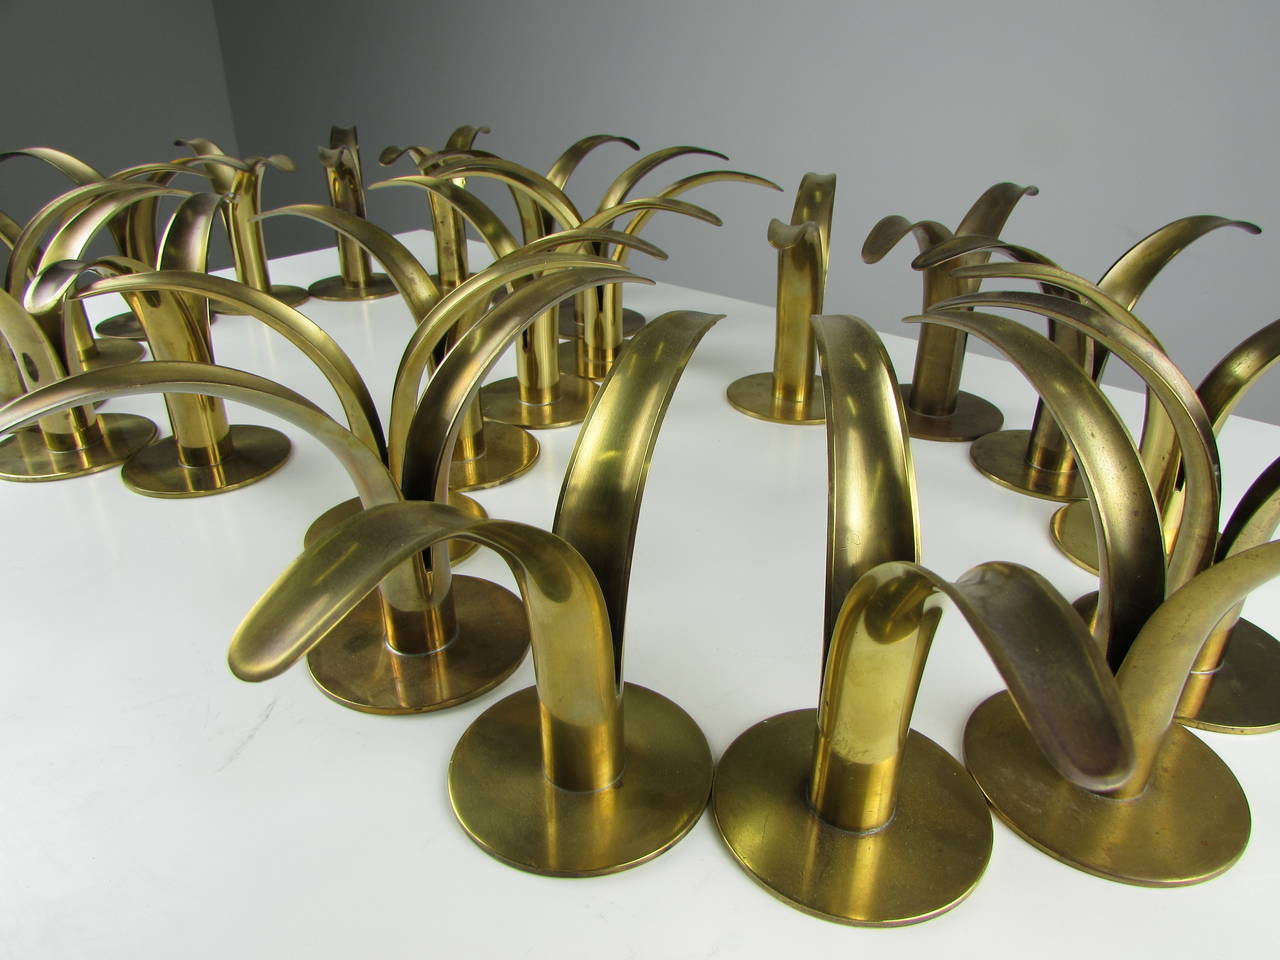 Swedish Flock of Brass Candleholders by Ivar Ålenius Björk for Ystad Metall, 1939